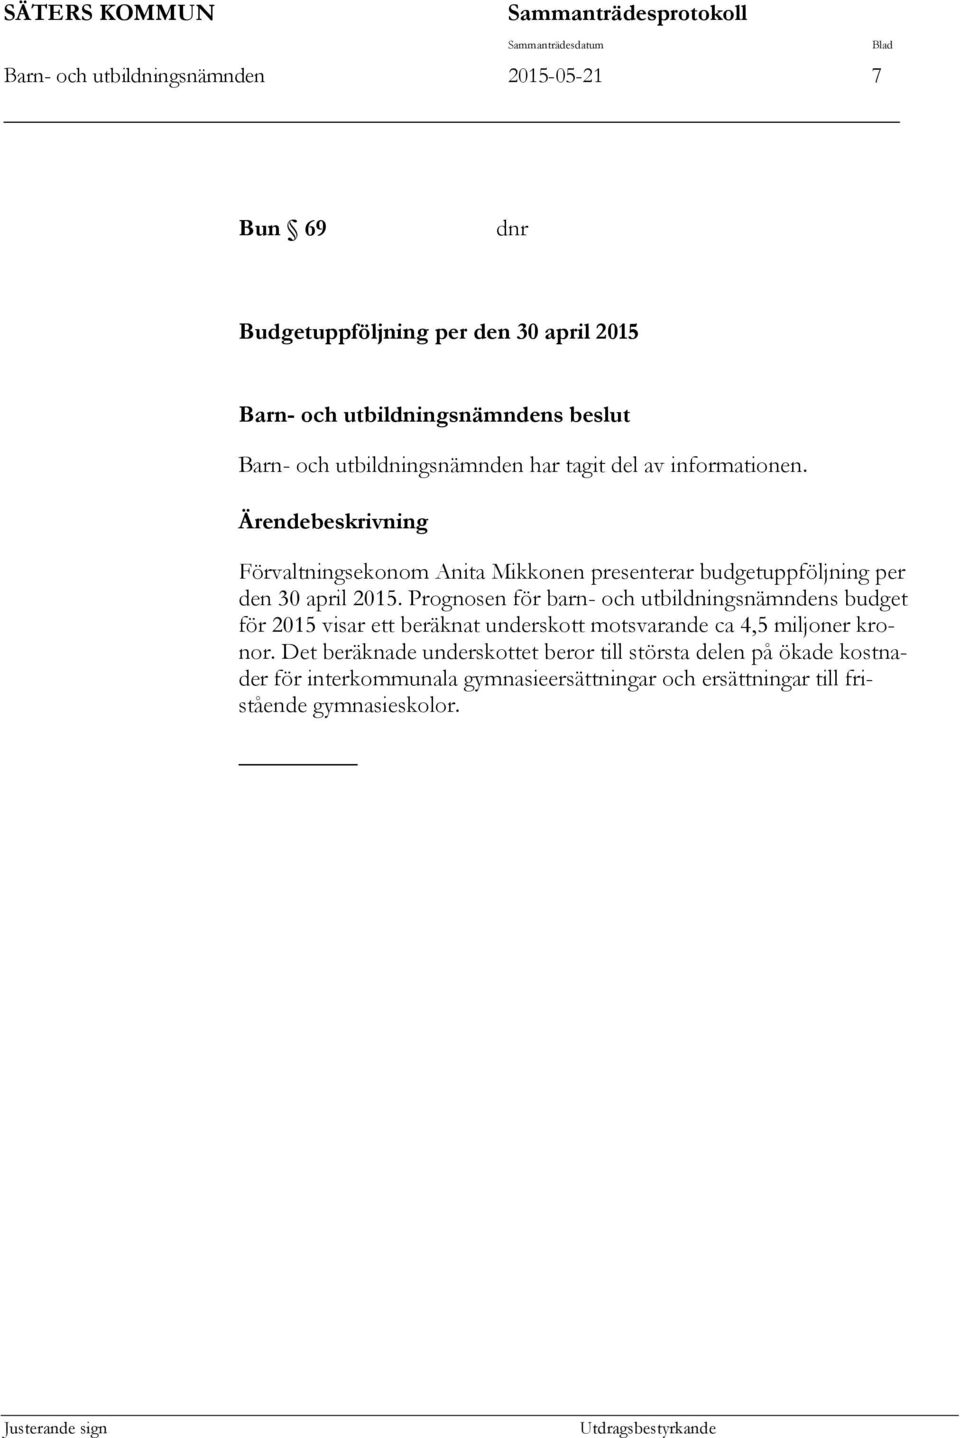 Förvaltningsekonom Anita Mikkonen presenterar budgetuppföljning per den 30 april 2015.